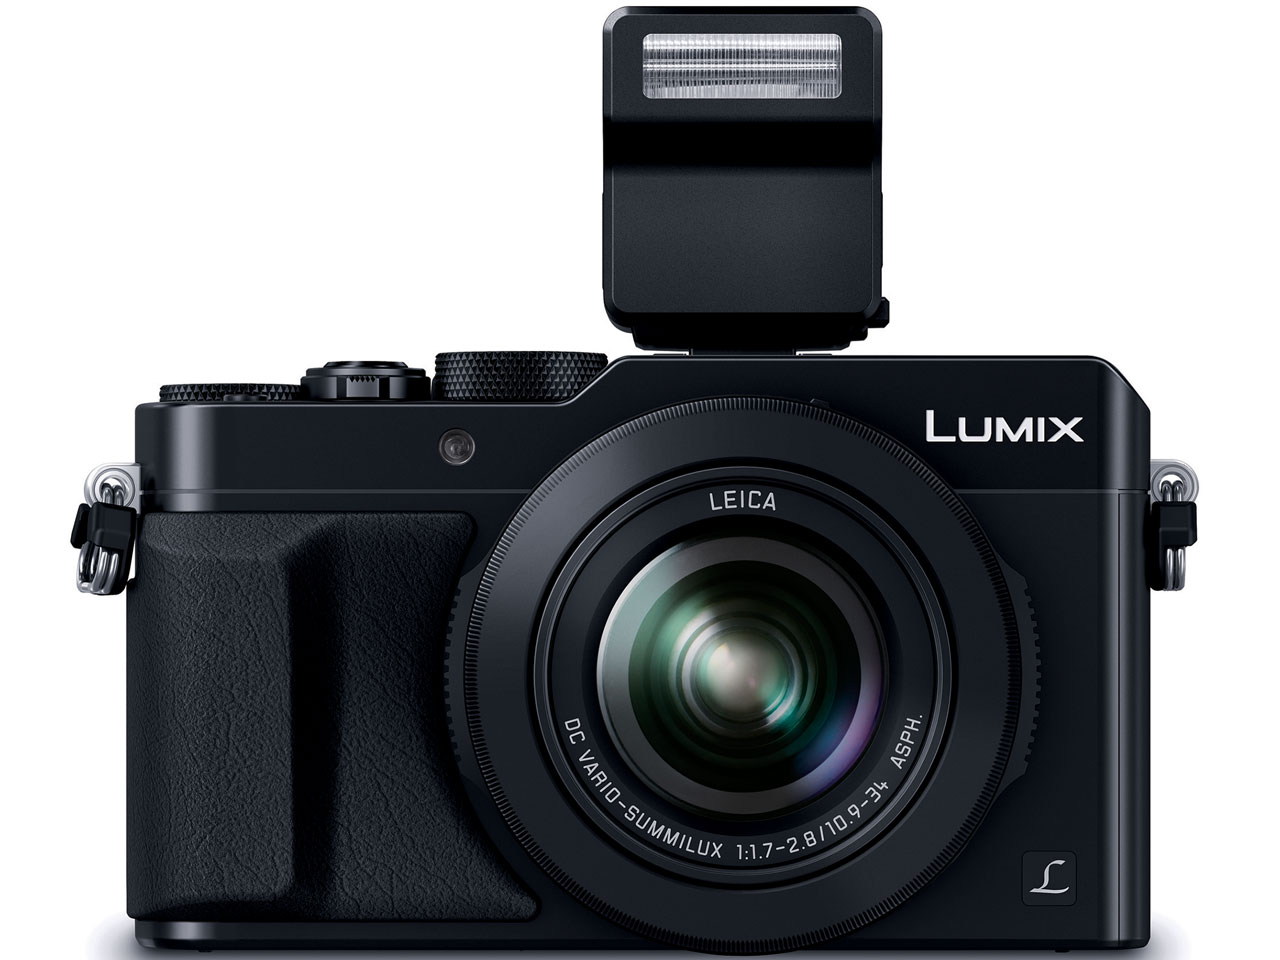 『本体 正面4』 LUMIX DMC-LX100-K [ブラック] の製品画像